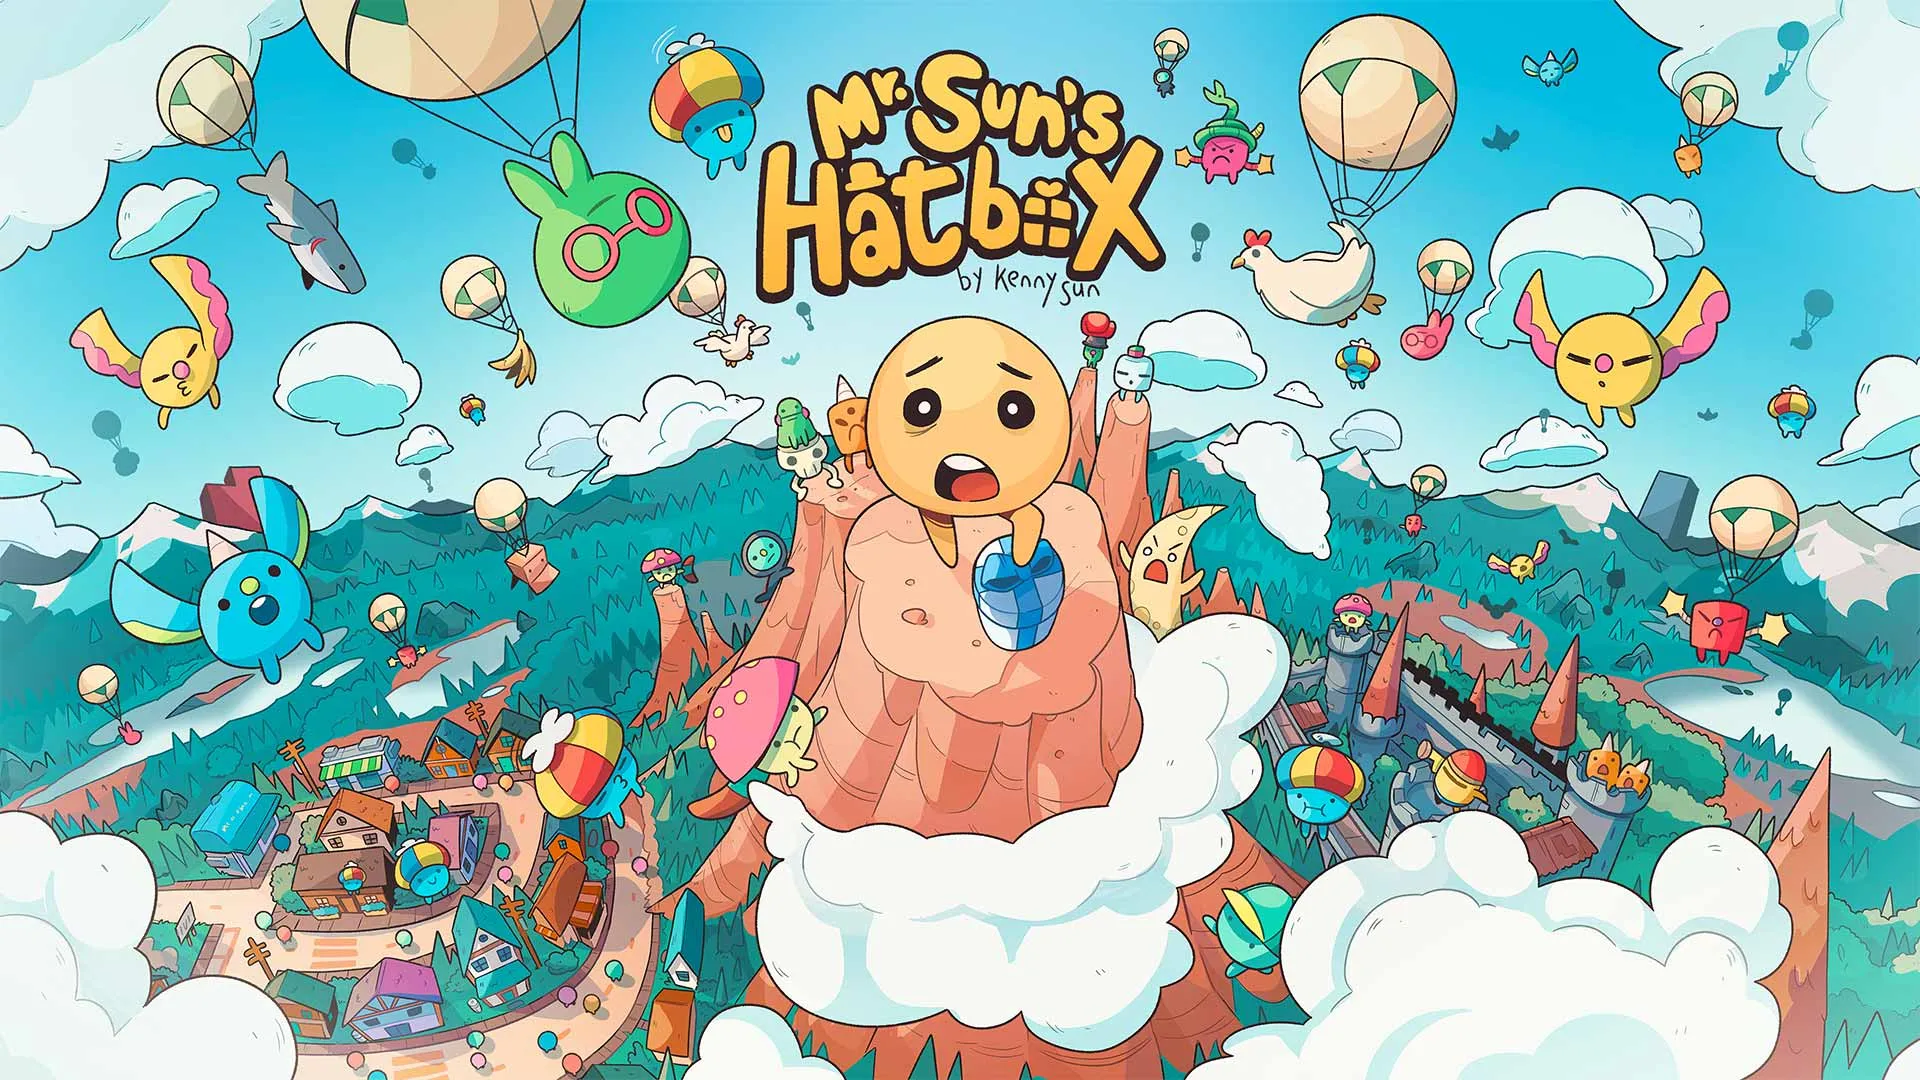 Mr. Sun's Hatbox is a slapstick roguelite stealth platformer